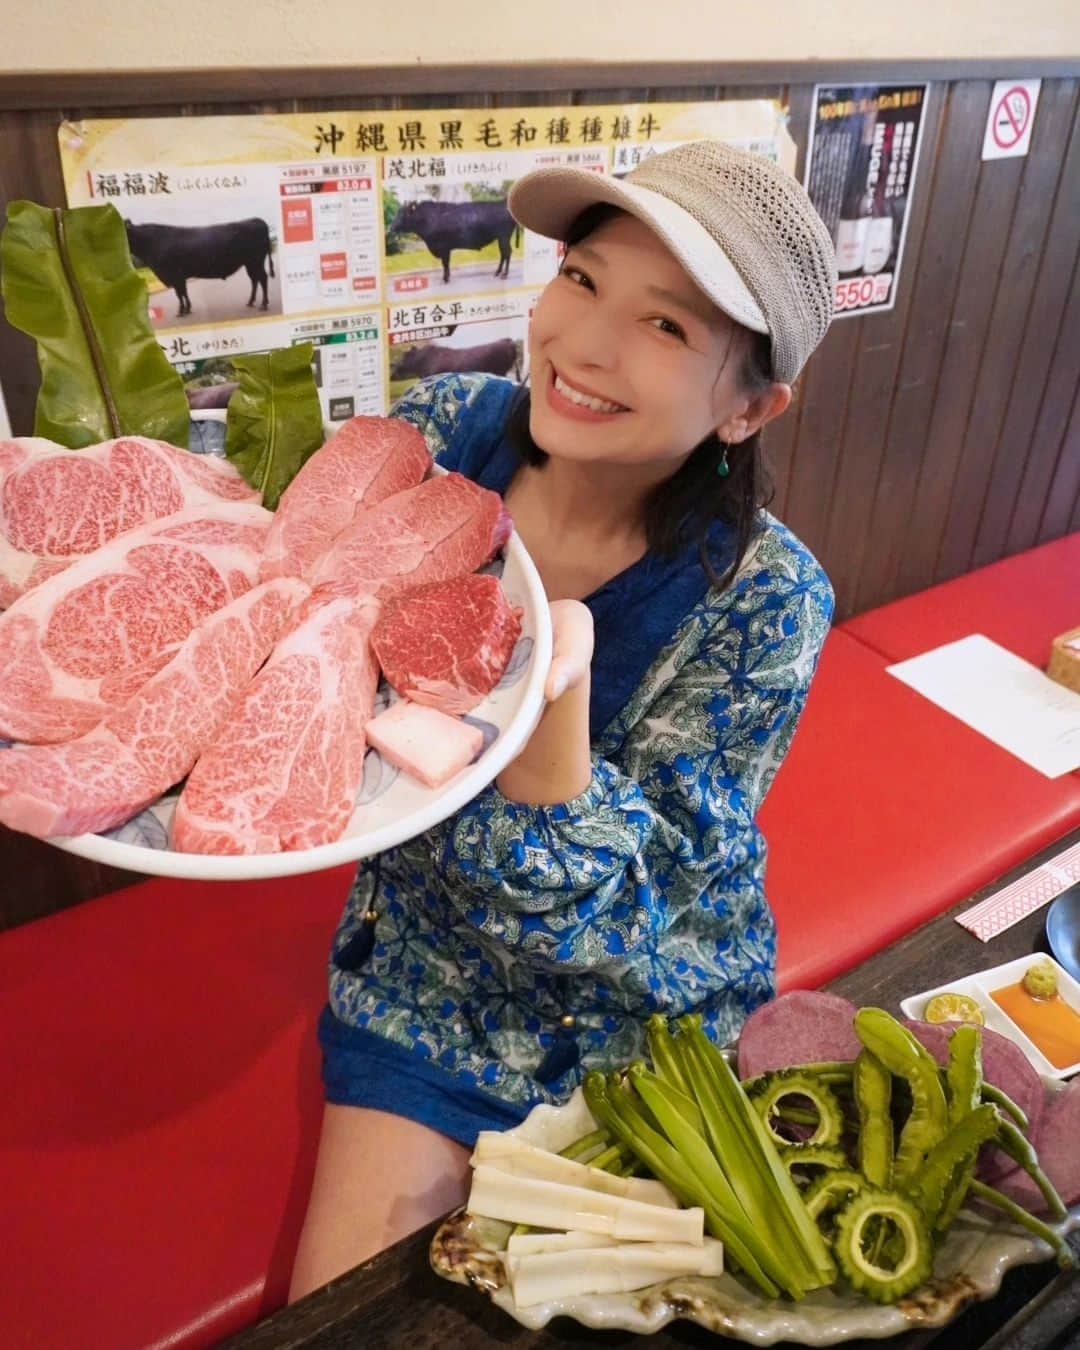 芳美リンのインスタグラム：「🗾沖縄/石垣島 Ishigaki island/Okinawa  石垣島へ行ったら、 ぜひ食べて欲しい！  焼き肉金城さんの石垣牛！🐄  焼き肉の概念を根本から覆す、 大きなお肉！  これはもはやステーキでは👀  社長自ら焼いてくれました🐄 分厚いお肉の、脂身からまず焼くいいそうです。 サイドから焼いて、両面焼いて、カット✃ お好みの焼き加減で仕上げてね。  牧草地で収穫したアダンをはじめ、様々な島のお野菜も焼いていただきました。 アダンは、筍みたいで美味しい！  島の恵みをこれでもかと堪能しました。  味付けは、石垣の塩🌊 デザートには石垣島SUNファームさんのパイナップルシャーベット🍍  この旅で見つけた食の魅力がギュギュっと詰まったコースでした♡  #石垣島グルメ #ゆいまーる牧場 #焼肉金城#石垣島#石垣牛 #牧草地#牧場見学 #沖縄旅行#japantrip#okinawa#ishigakiisland」